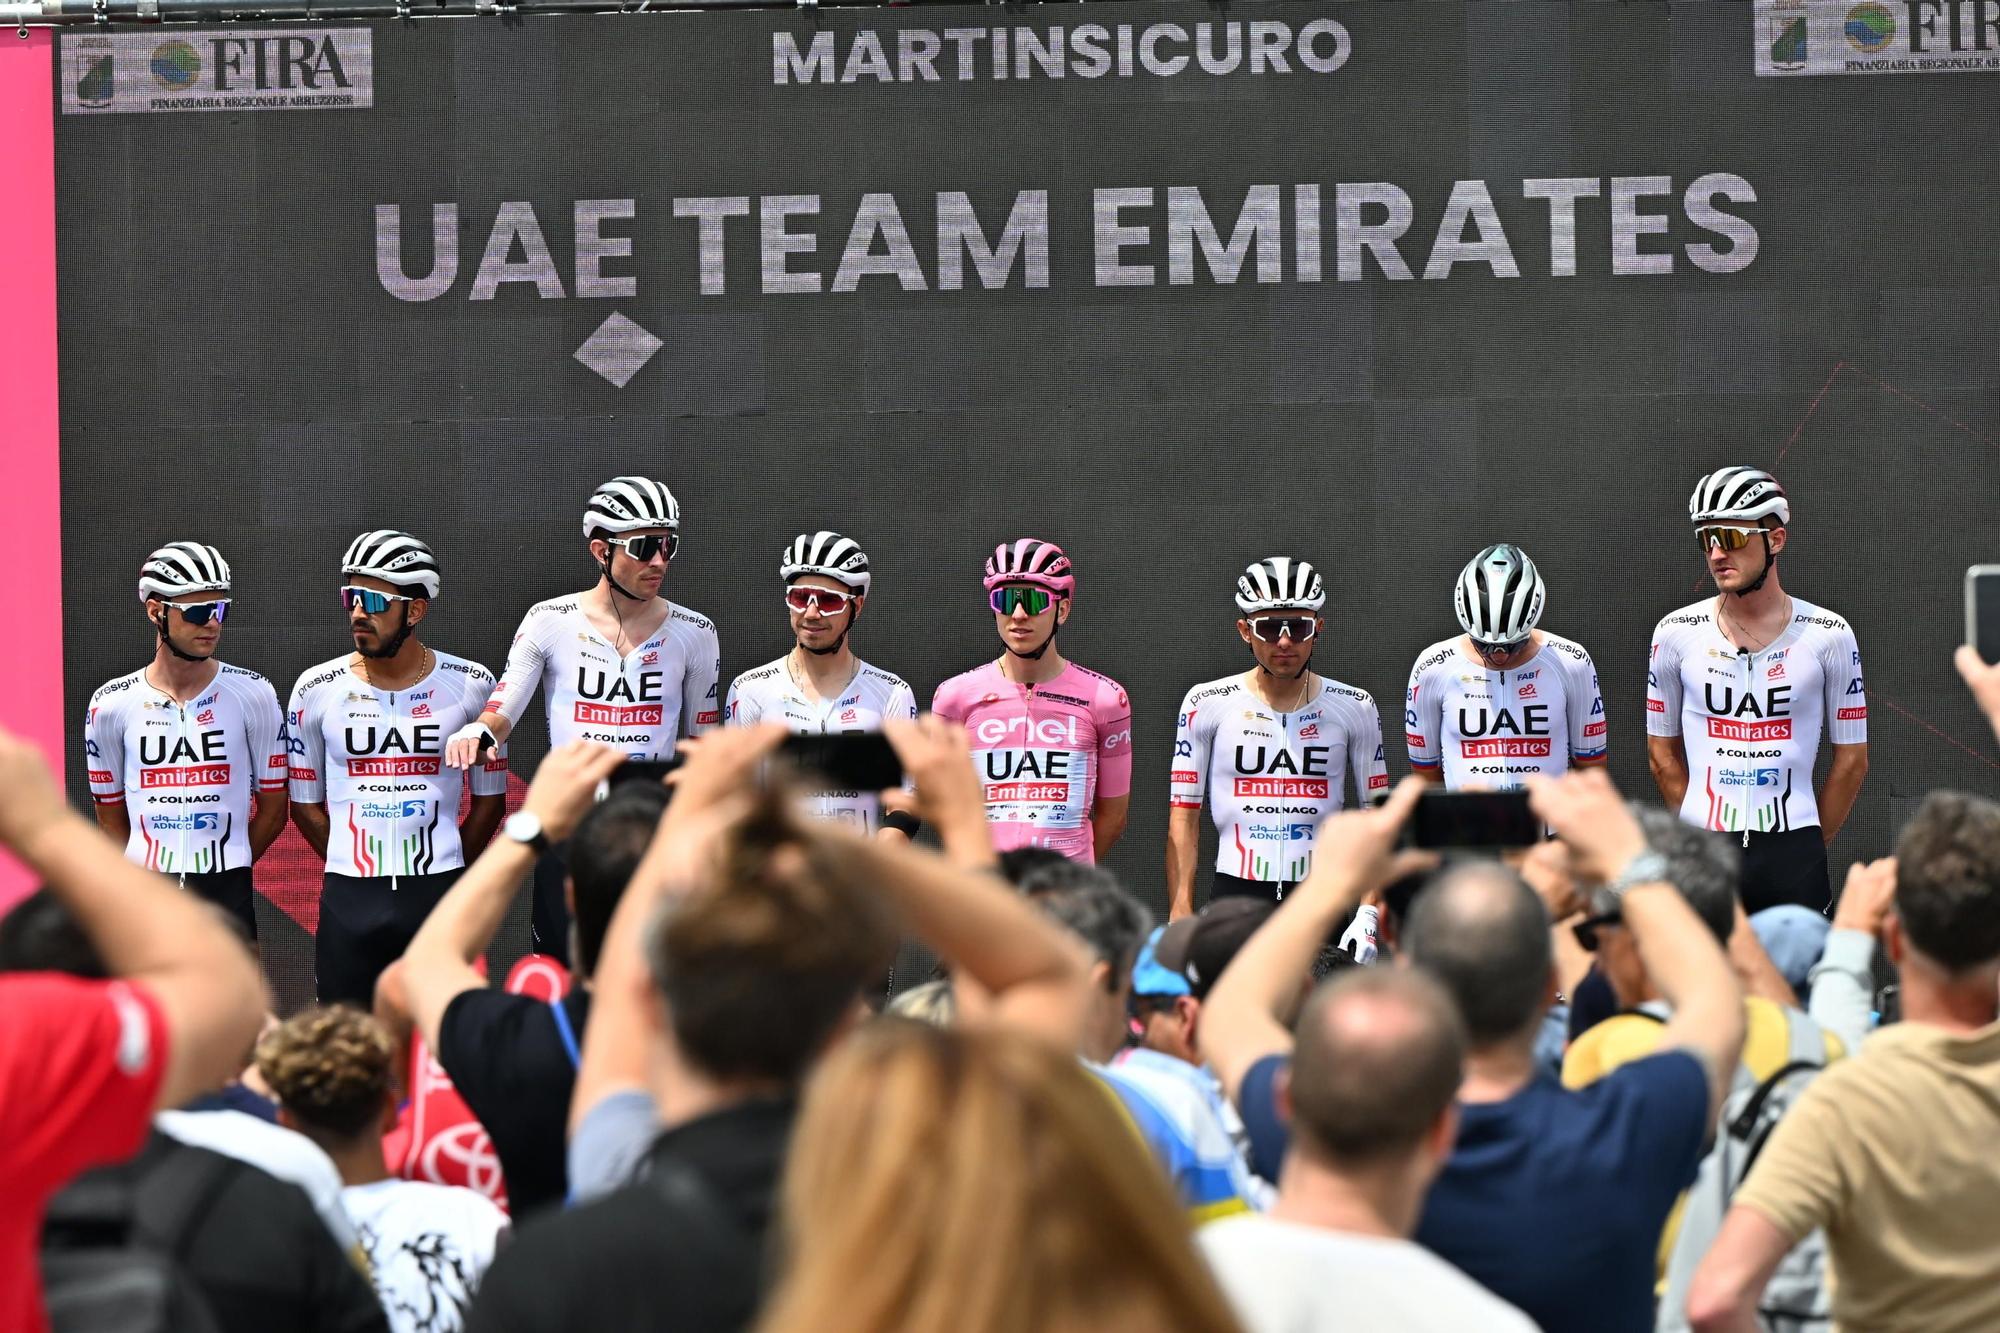 Giro d'Italia cycling tour - Stage 12